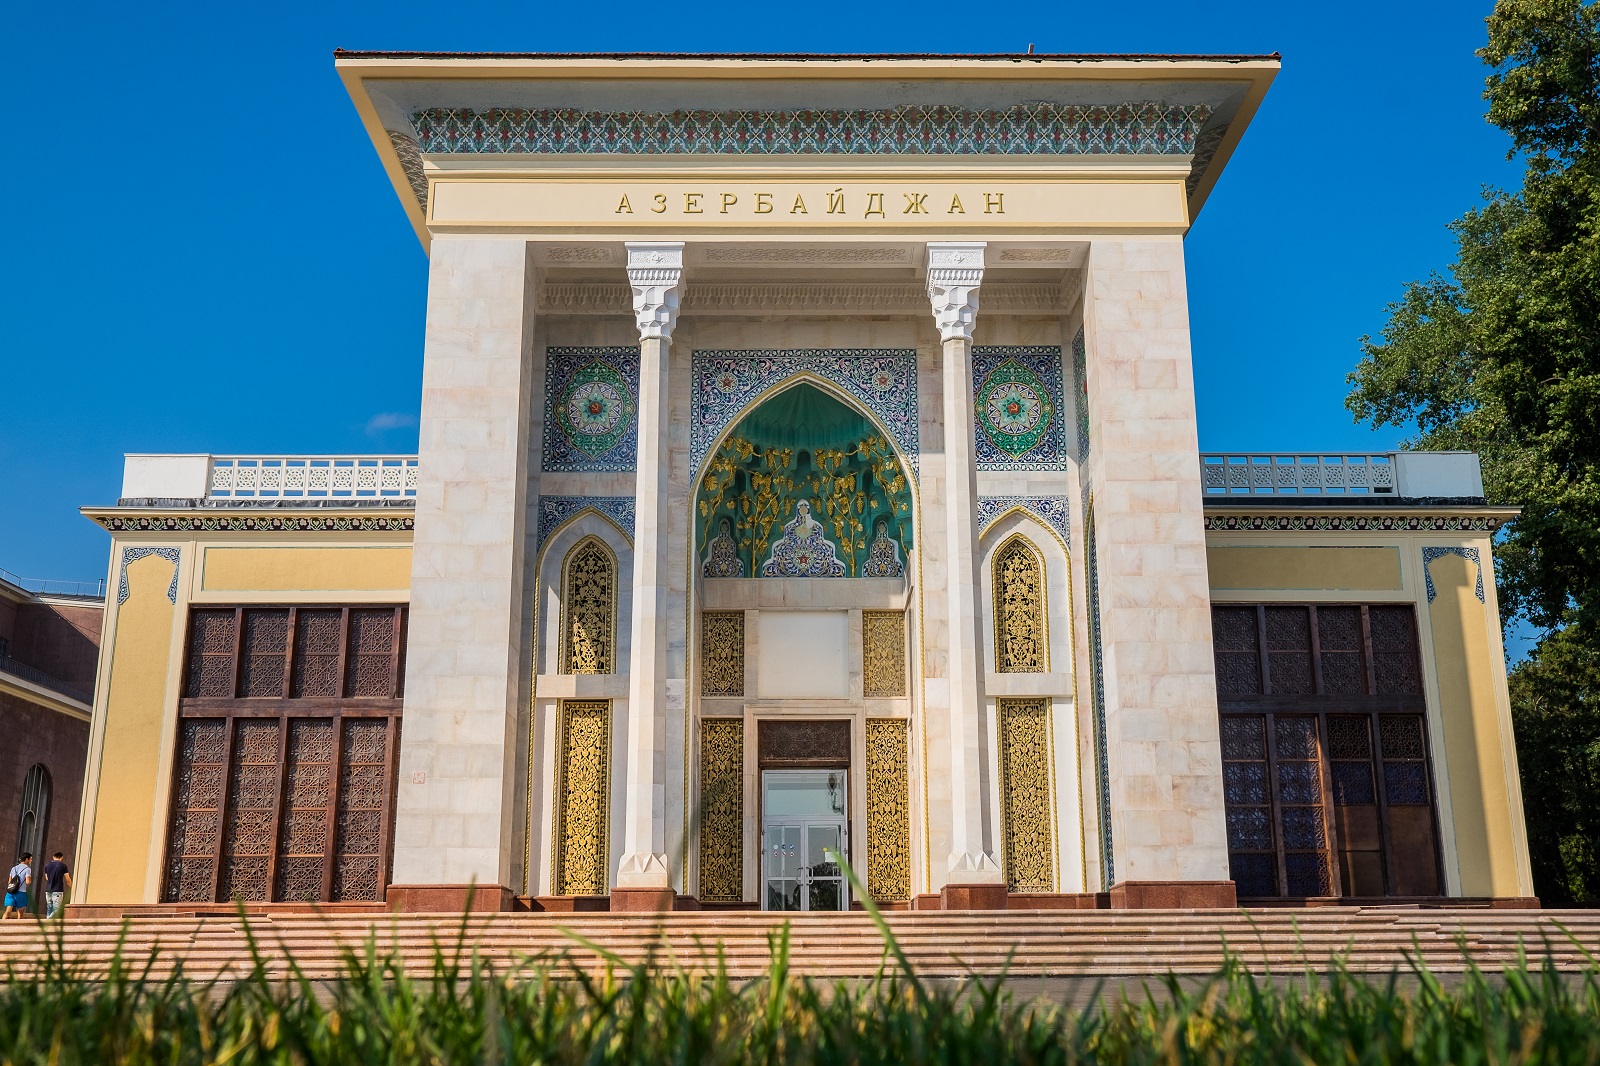 Азербайджан выделил 6,5 млн евро на дизайн своего павильона на ВДНХ